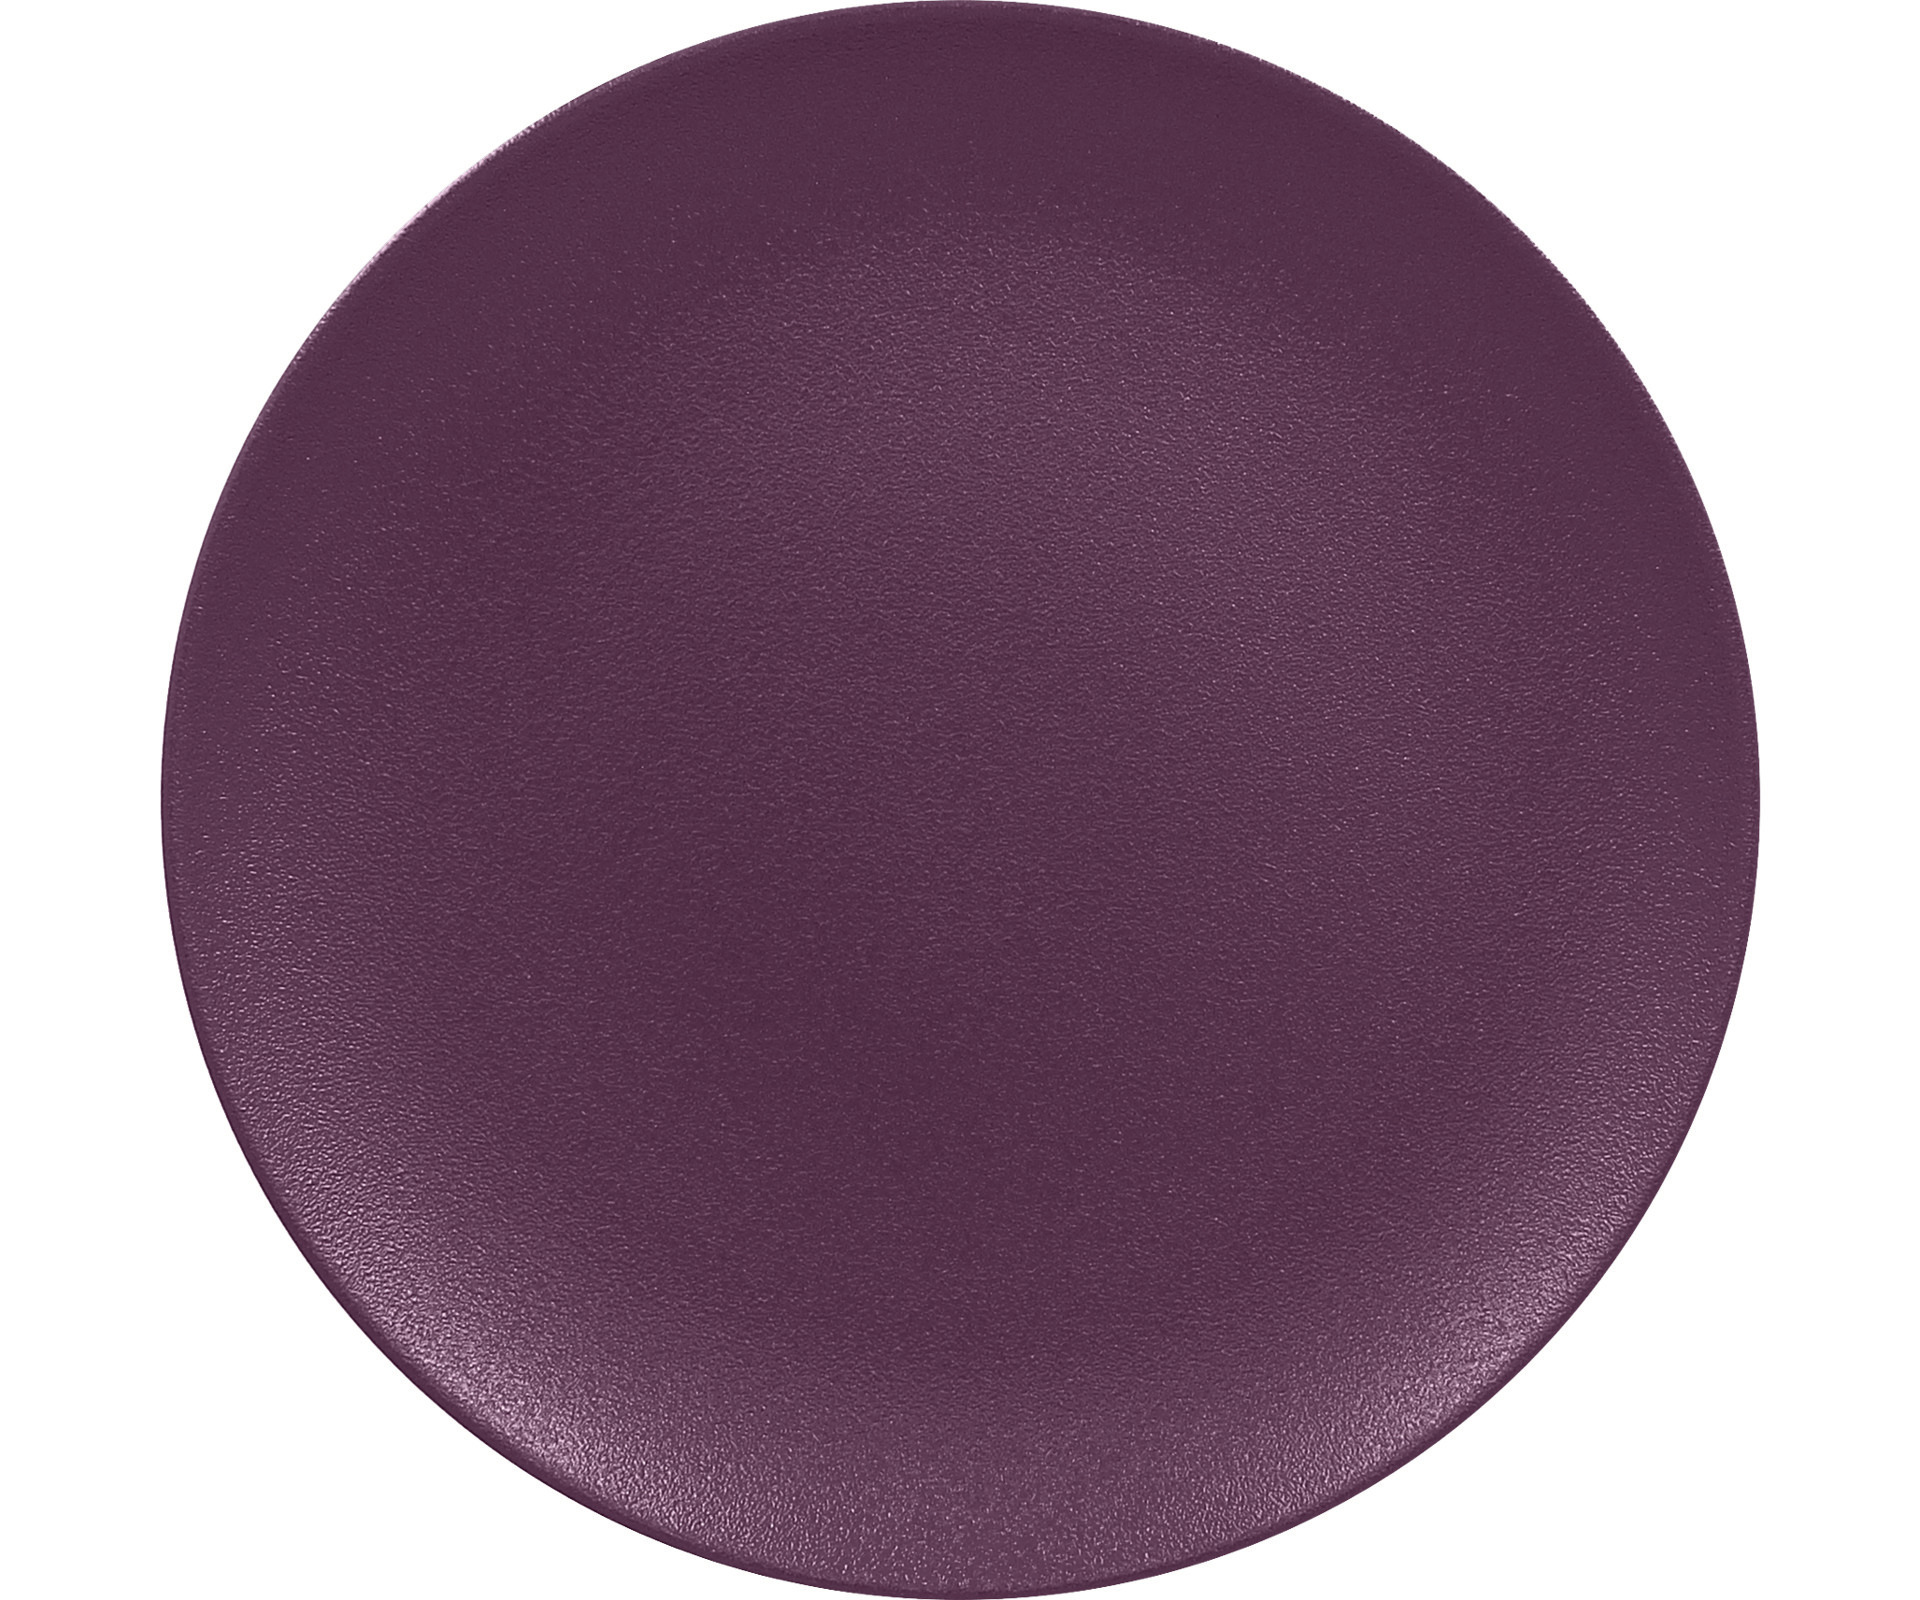 Coupteller flach 290 mm plum-purple